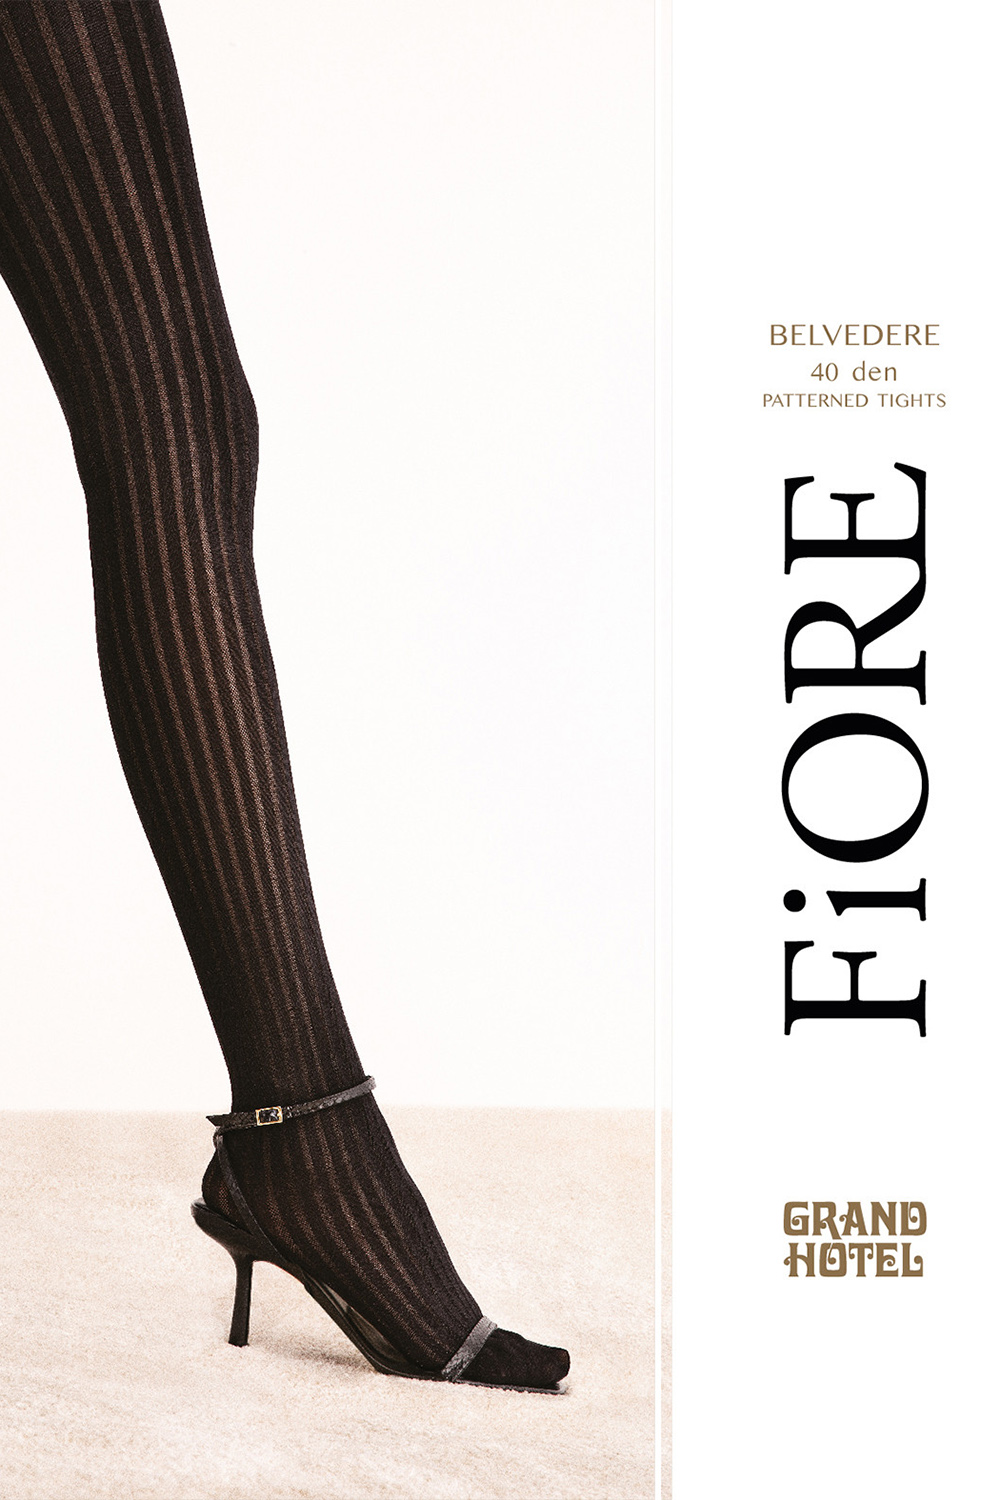 Fiore Belvedere 40 DEN G6101 - black